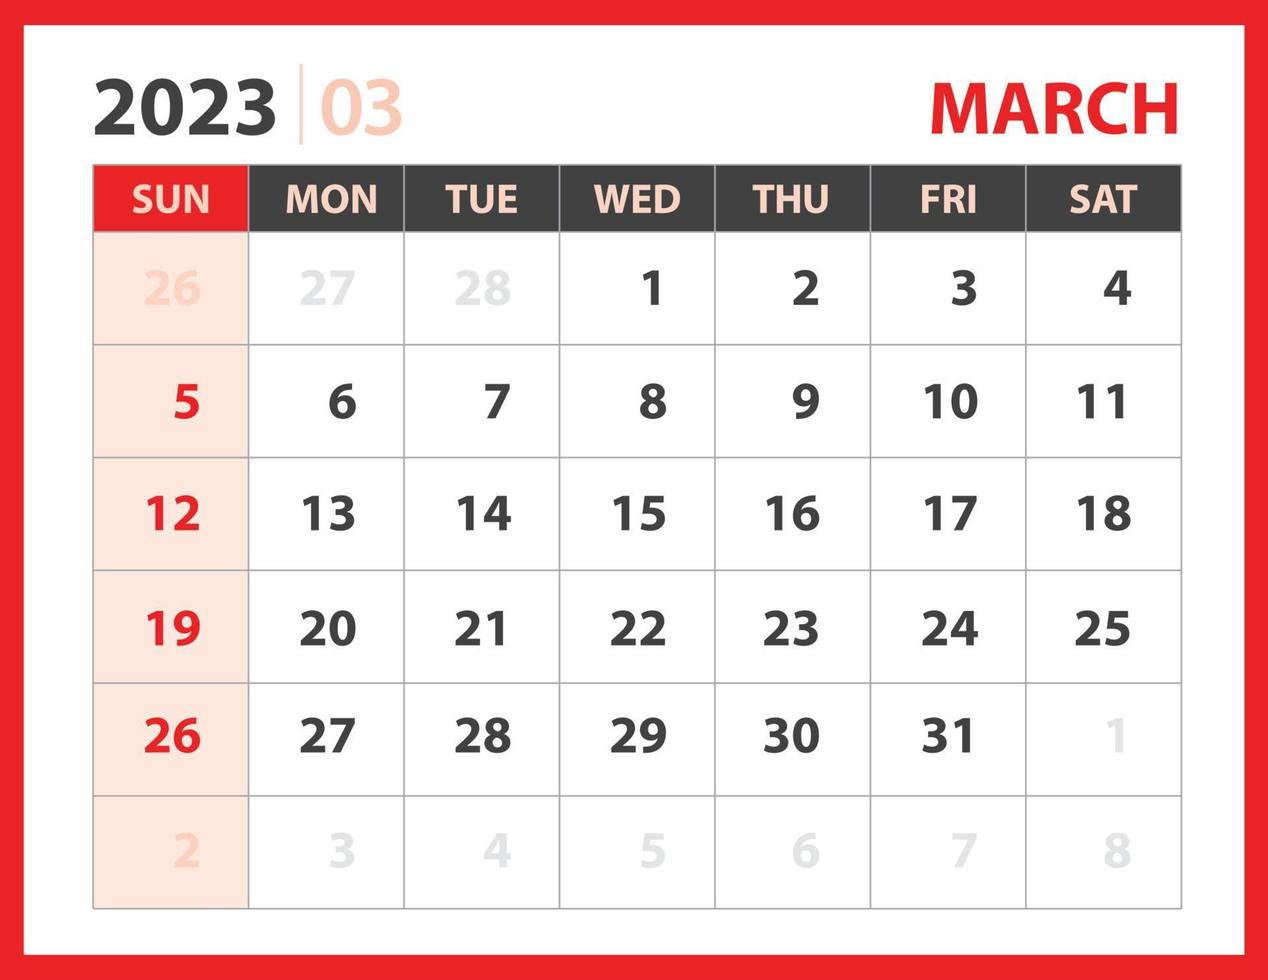 März 2023 Vorlage, Kalender 2023 Designvektor, Planerlayout, Woche beginnt am Sonntag, Tischkalender 2023 Vorlage, Briefpapier. Wandkalender auf rotem Hintergrund, Vektor eps 10